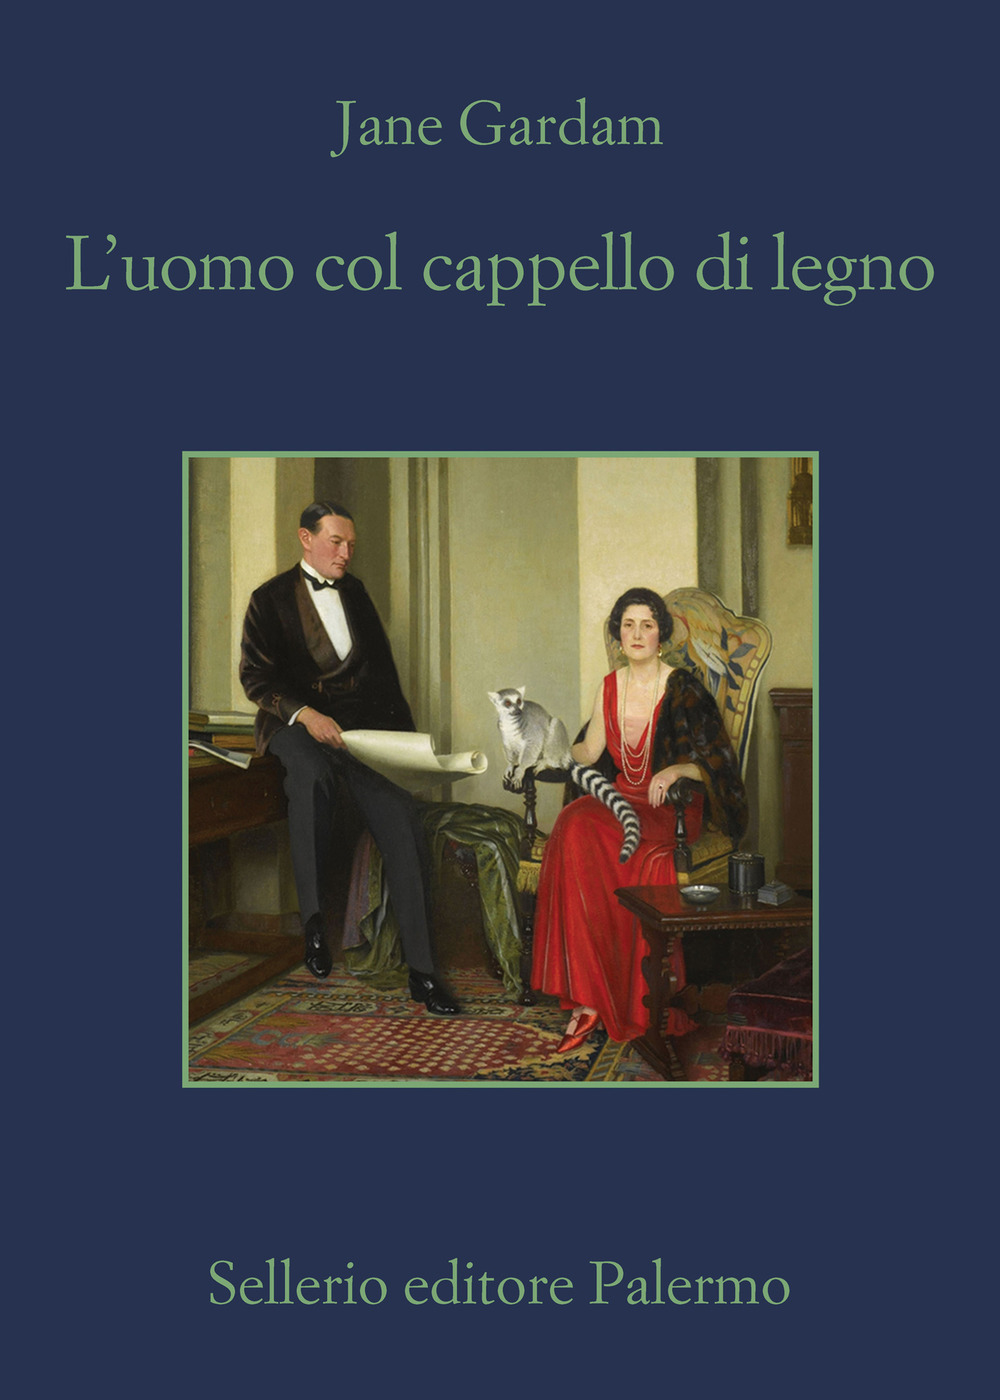 L'uomo col cappello di legno - Jane Gardam - Sellerio Editore Palermo